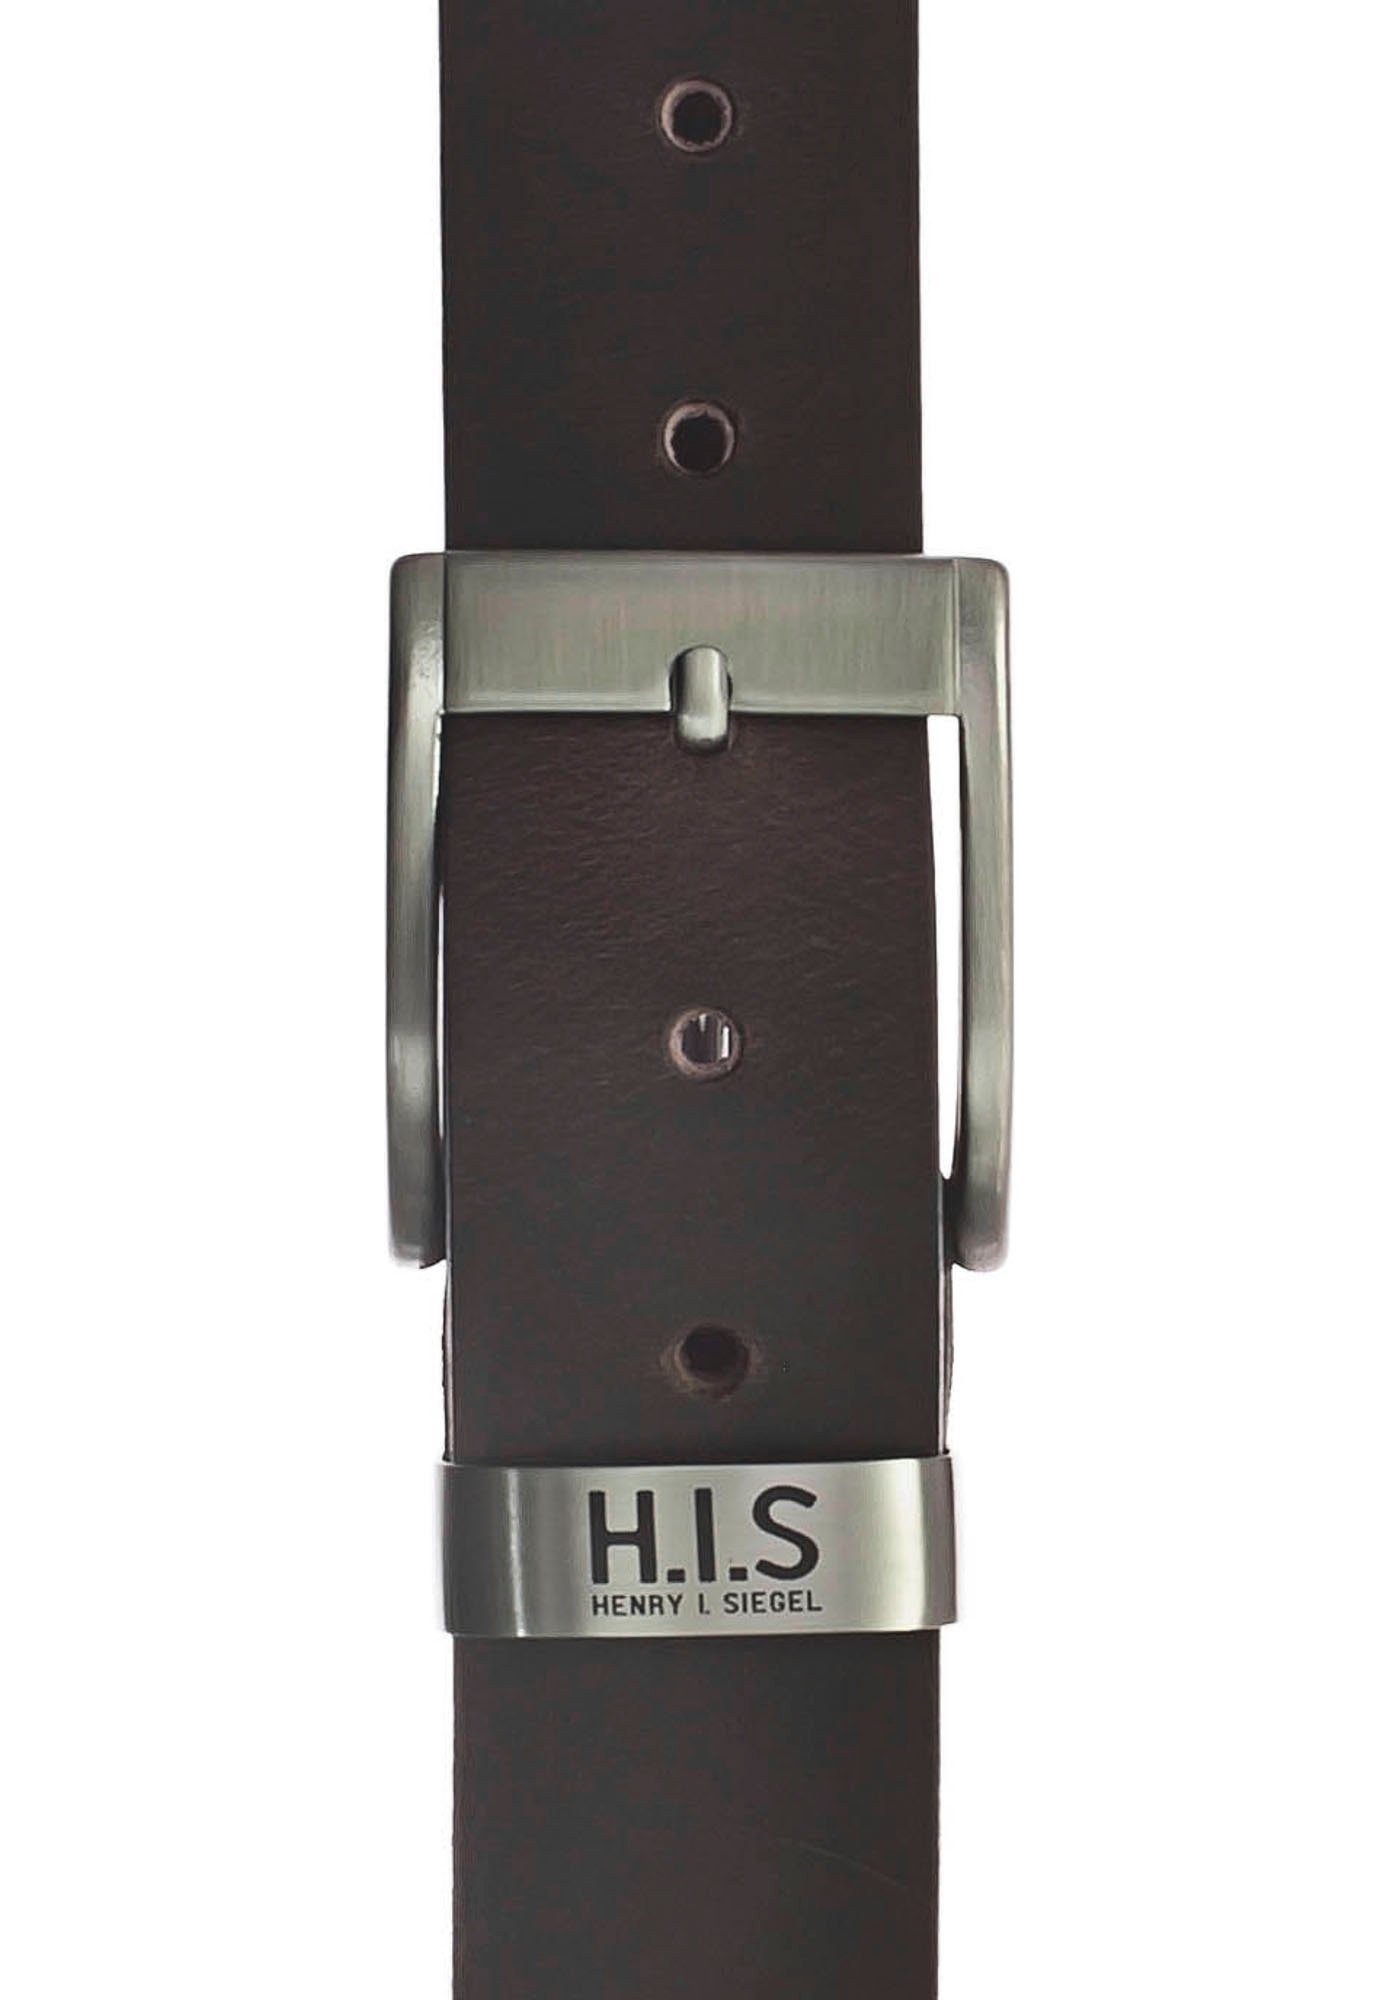 H.I.S Ledergürtel Vollrindledergürtel mit Metallschlaufe und LOGO dunkelbraun